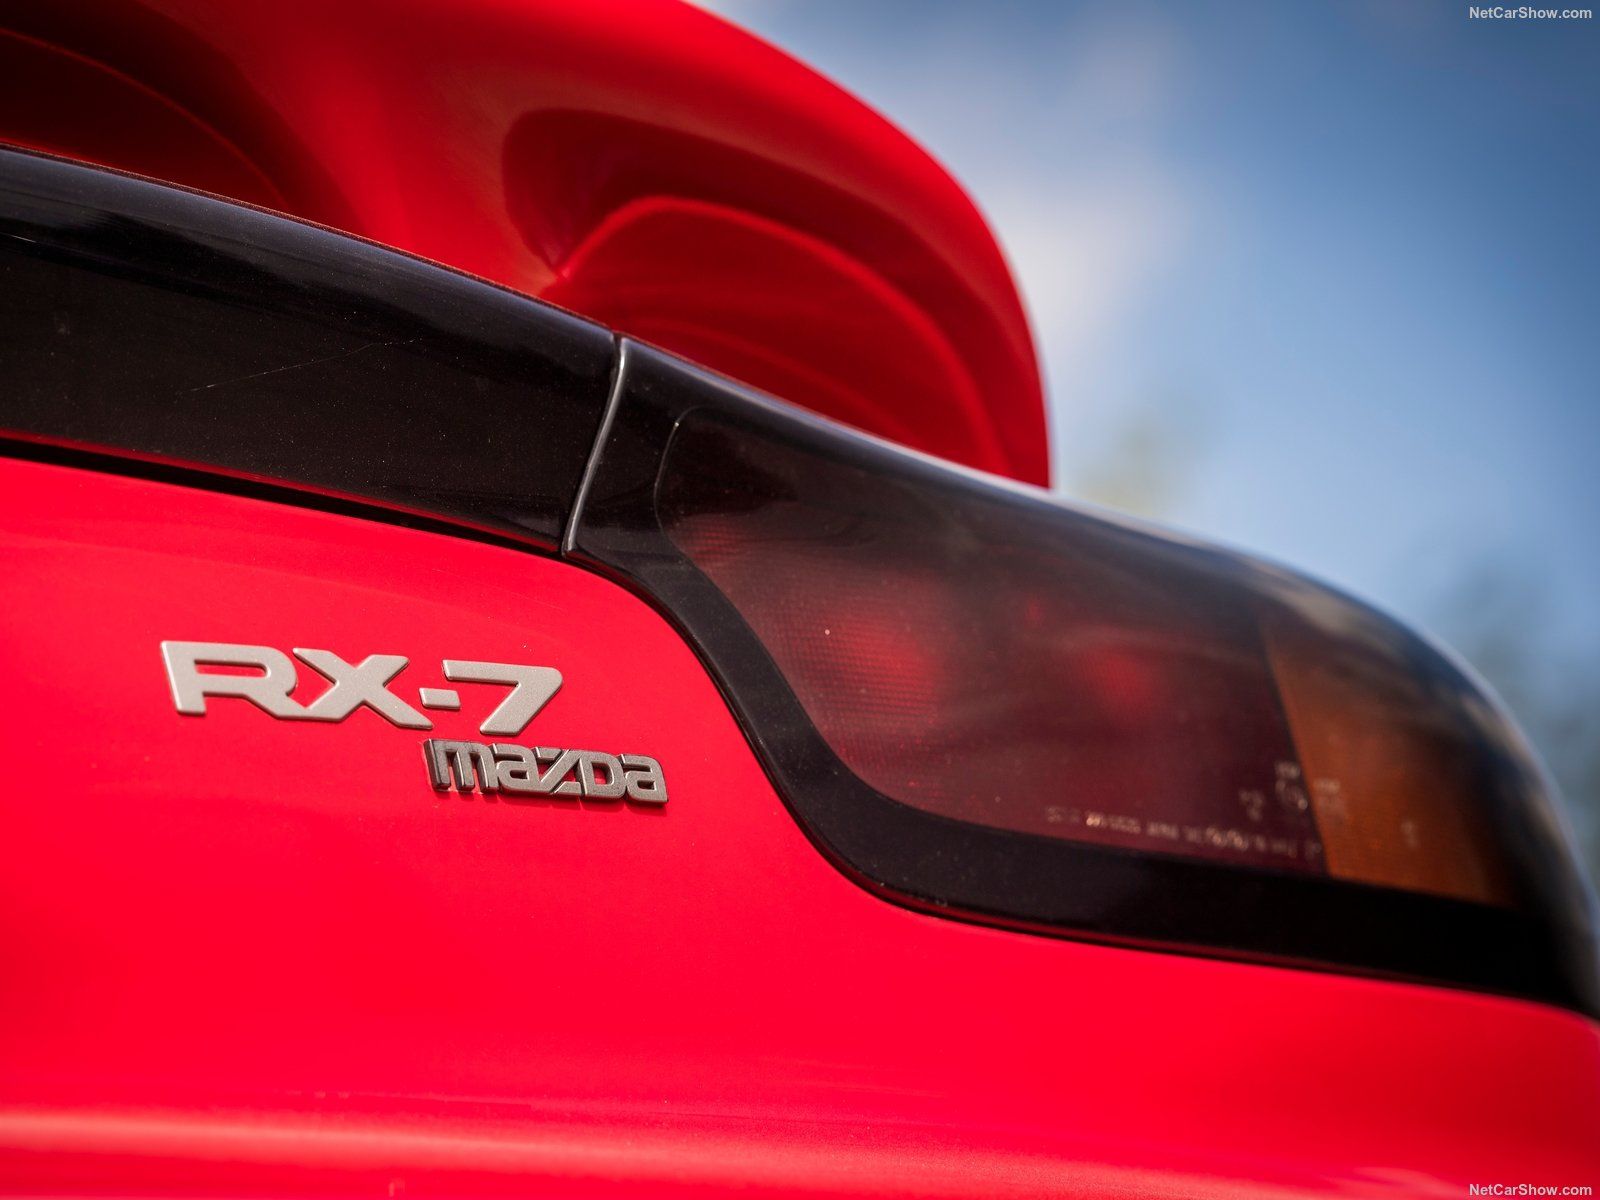 1992 Mazda RX-7 badge